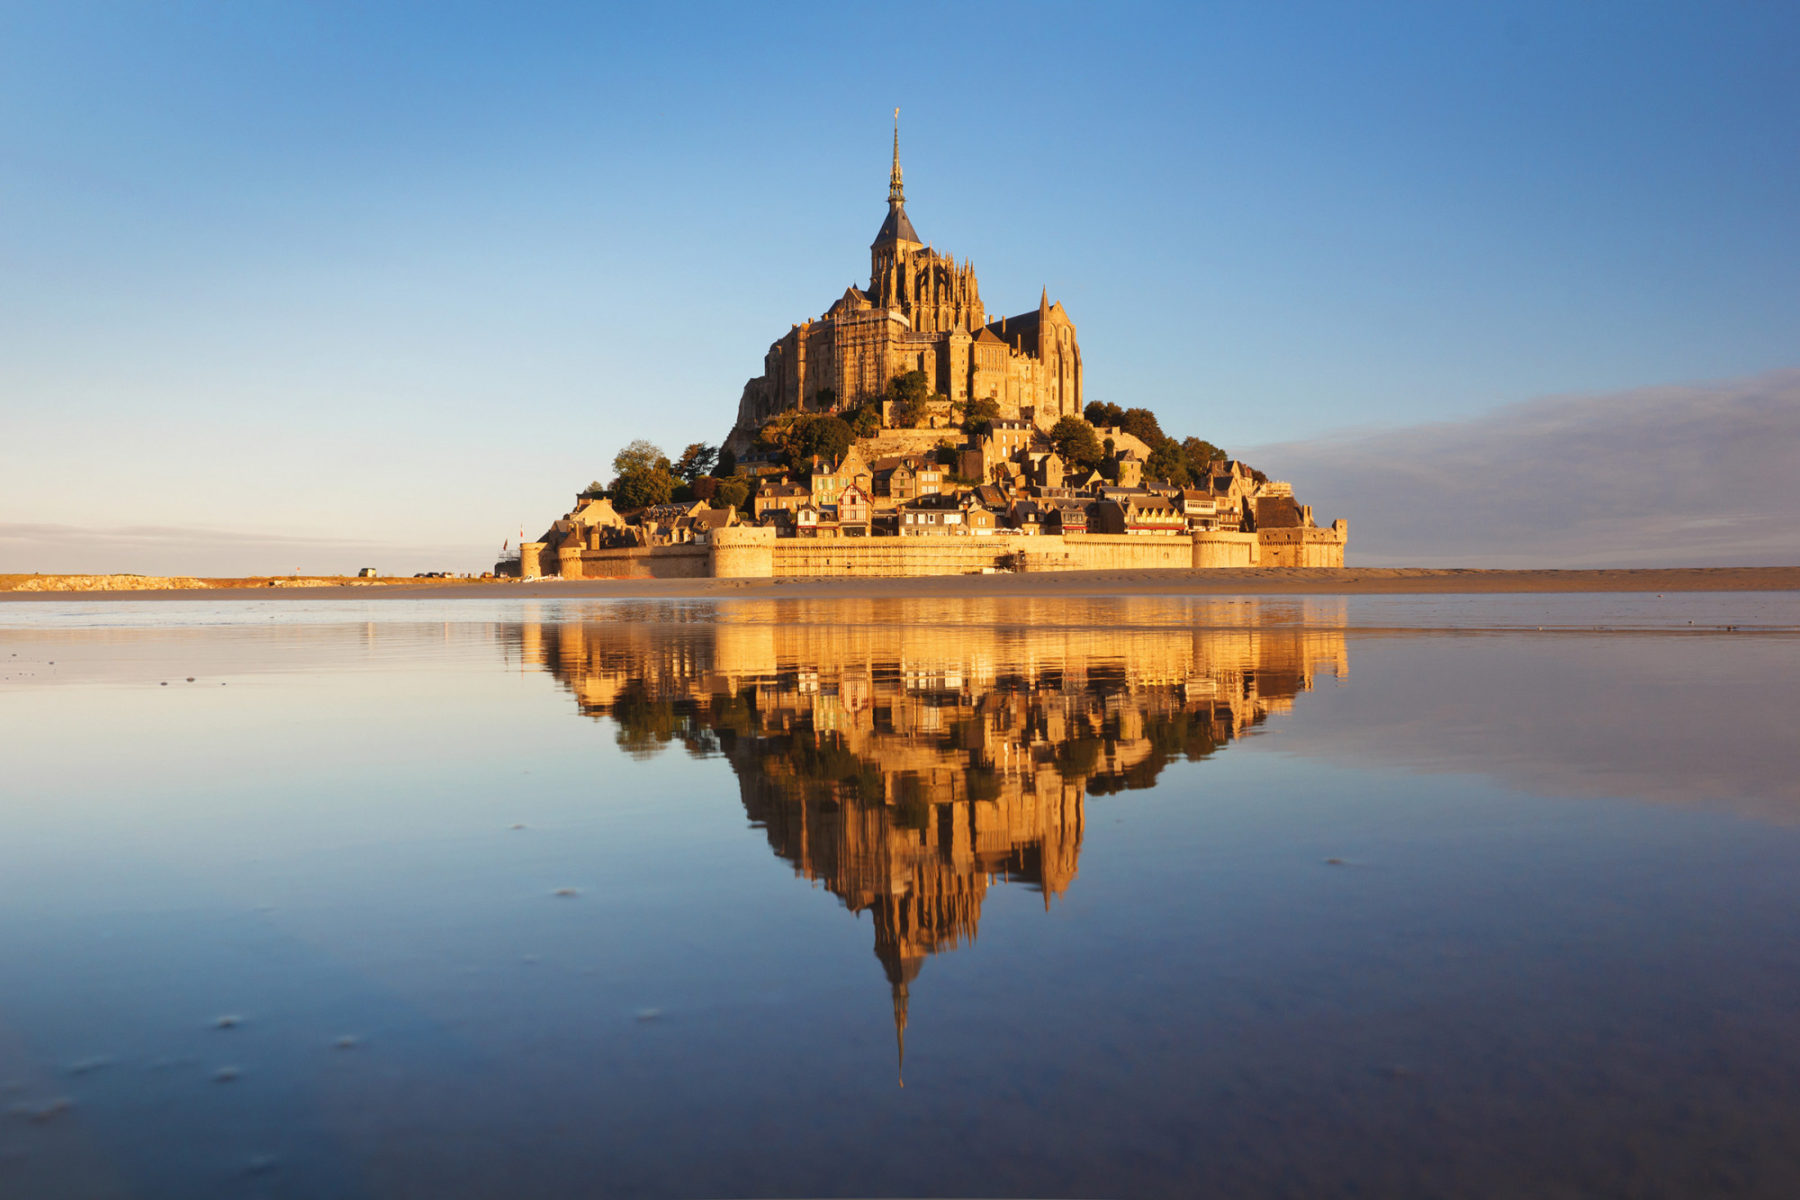 In Normandia, l’isolotto di Mont Saint Michel con la sua abbazia